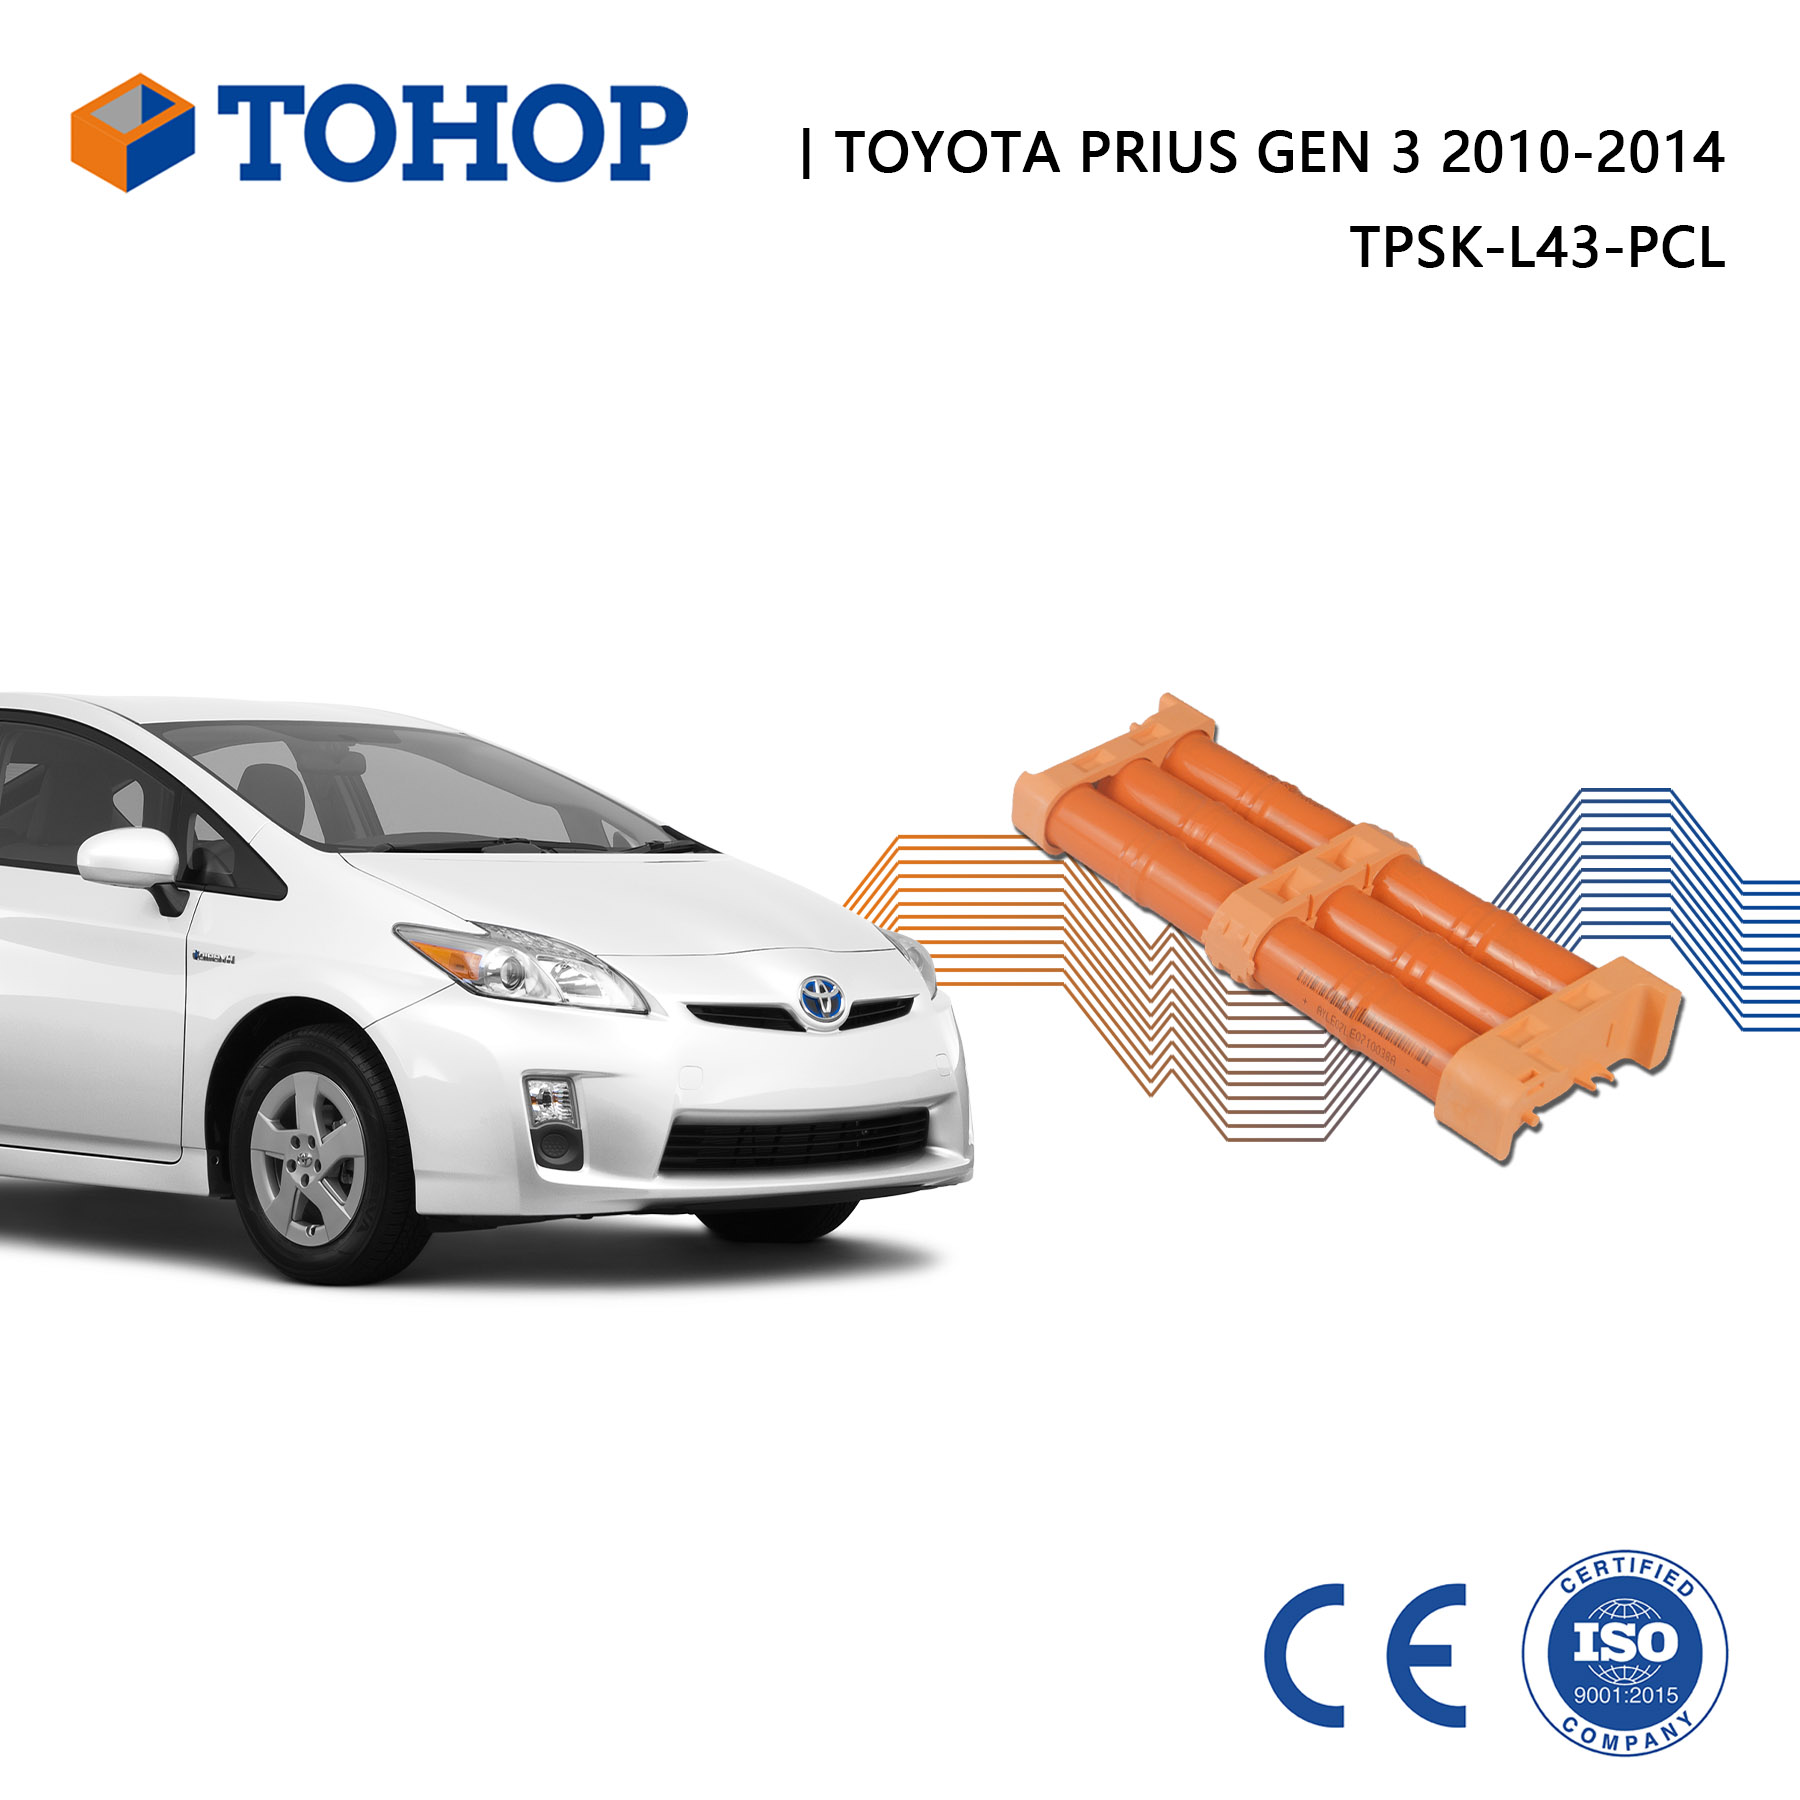 Batería híbrida Toyota Prius Gen 2 Gen 3 2004-2014 Célula de repuesto Nimh